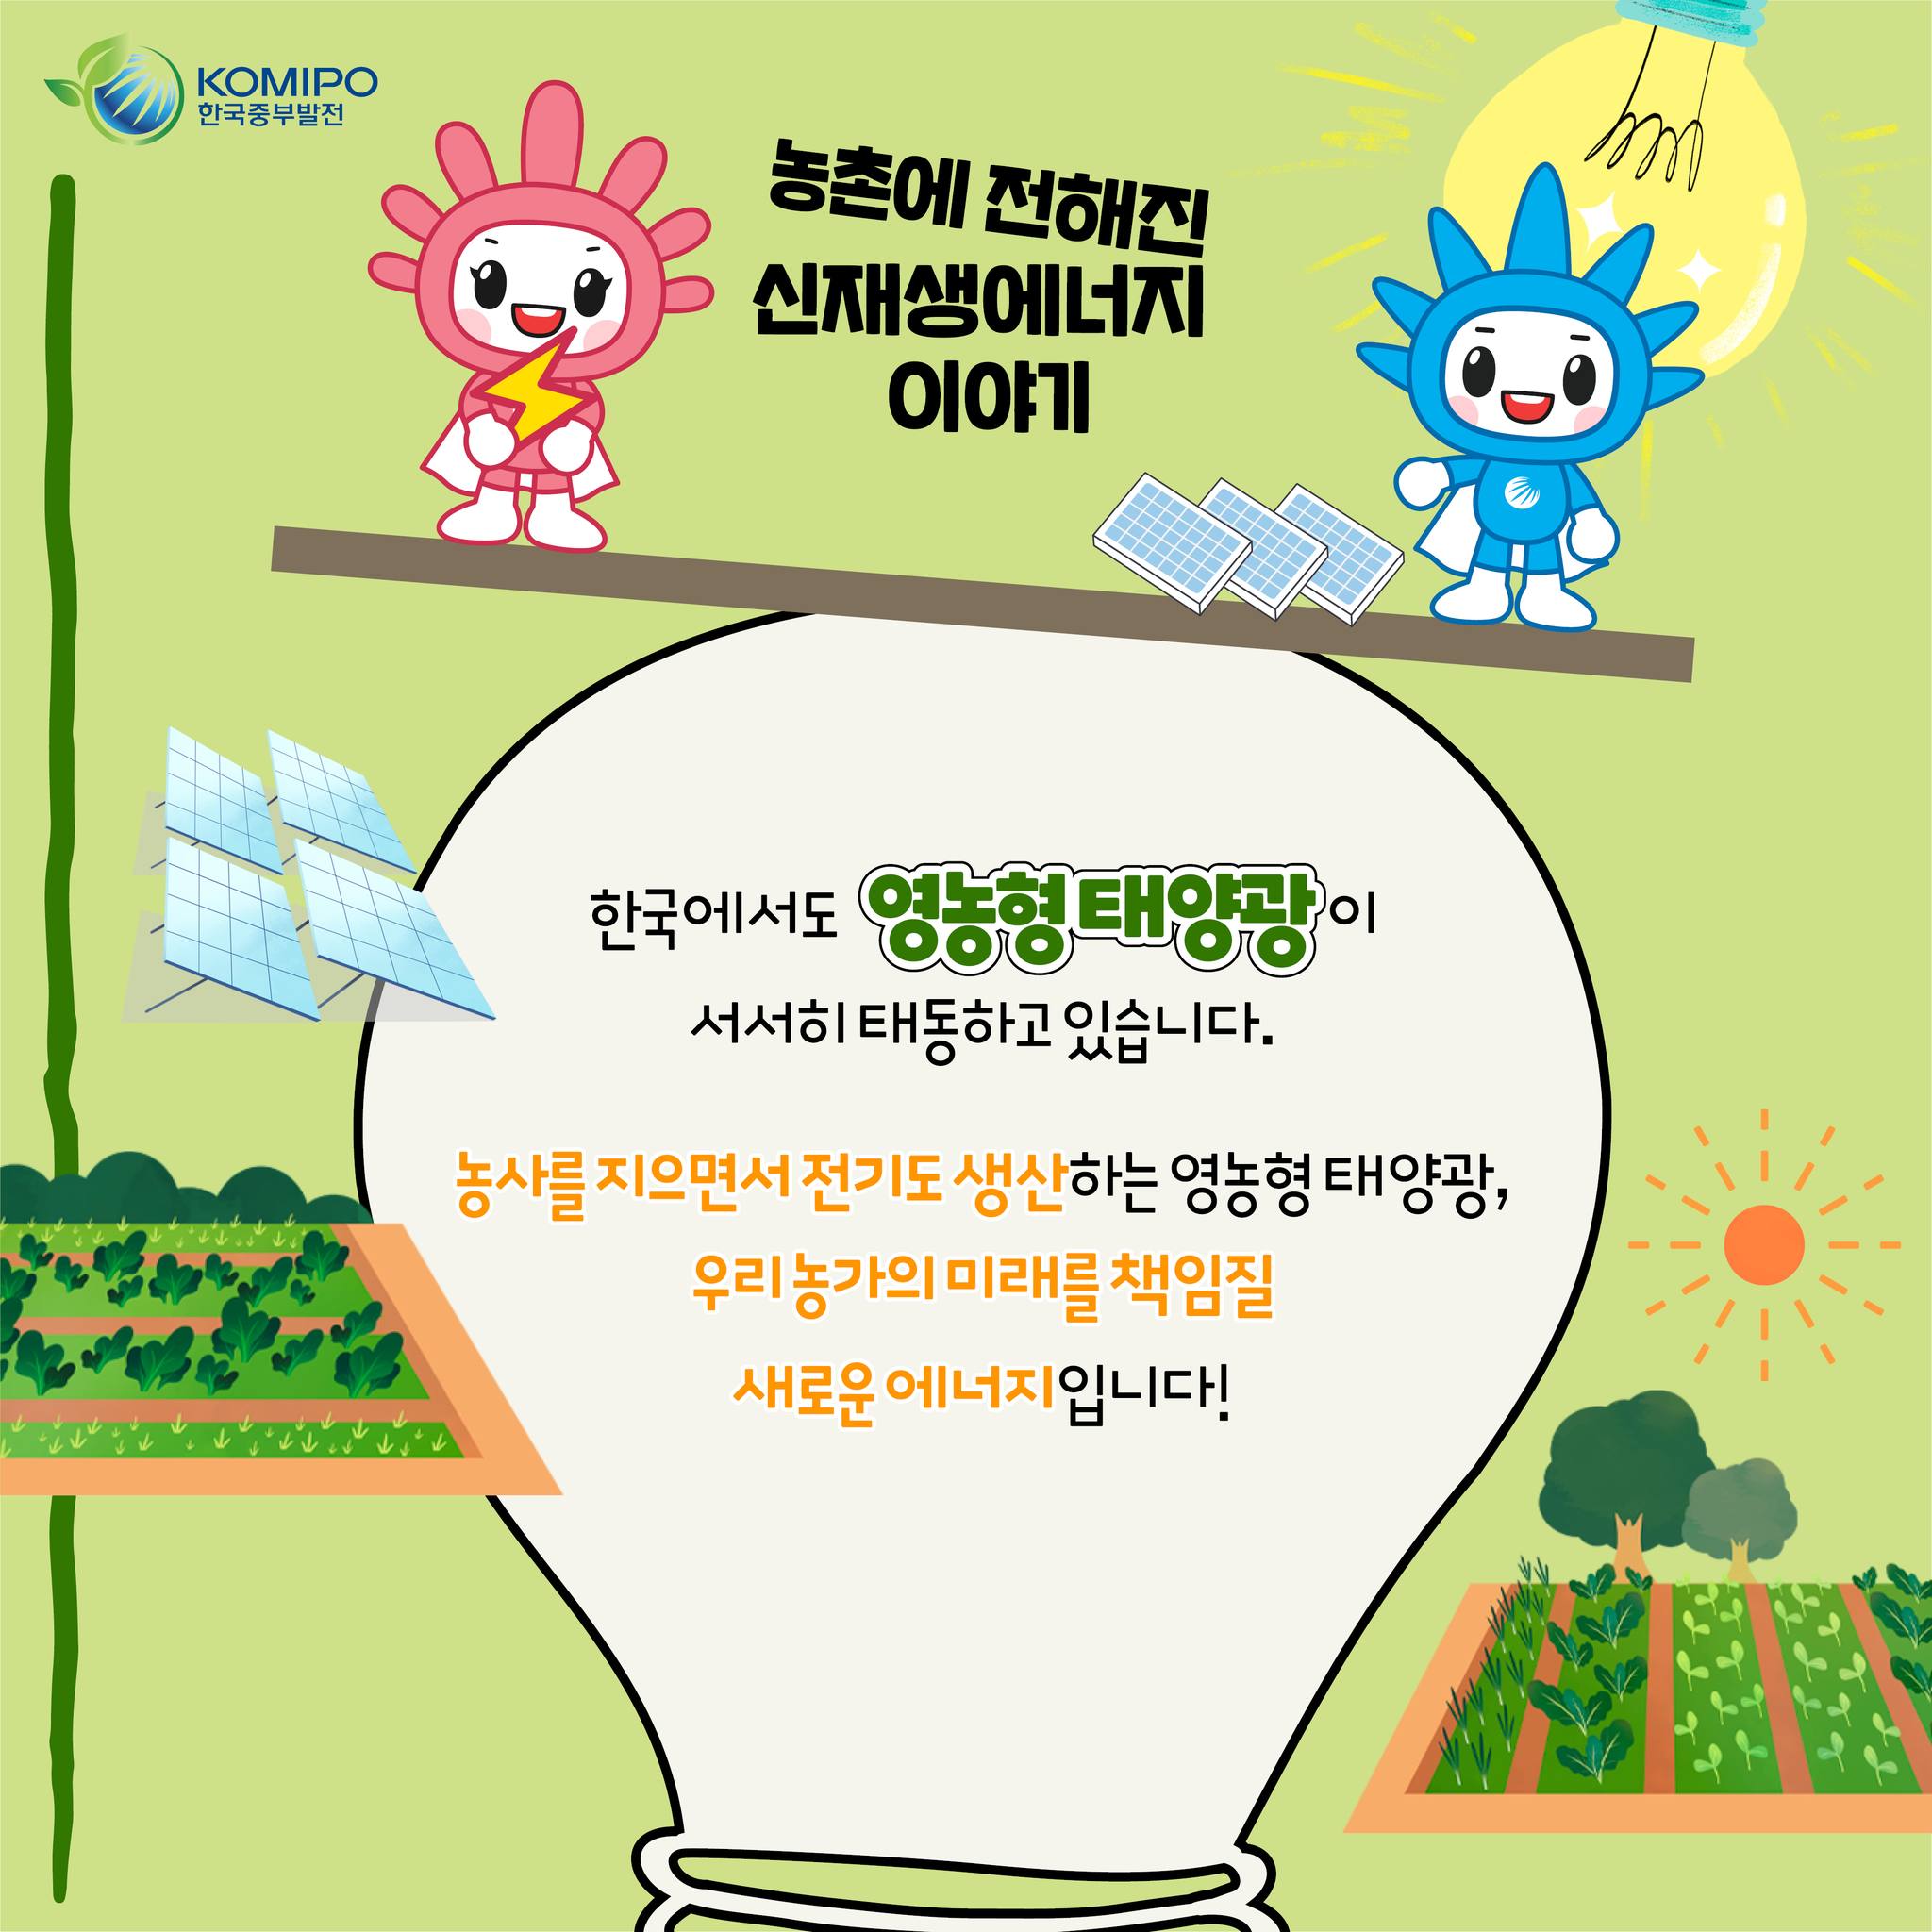 한국에서도 영농형 태양광이 서서히 태동하고 있습니다. 농사를 지으면서 전기도 생산하는 영농형 태양광, 우리 농가의 미래를 책임질 새로운 에너지입니다